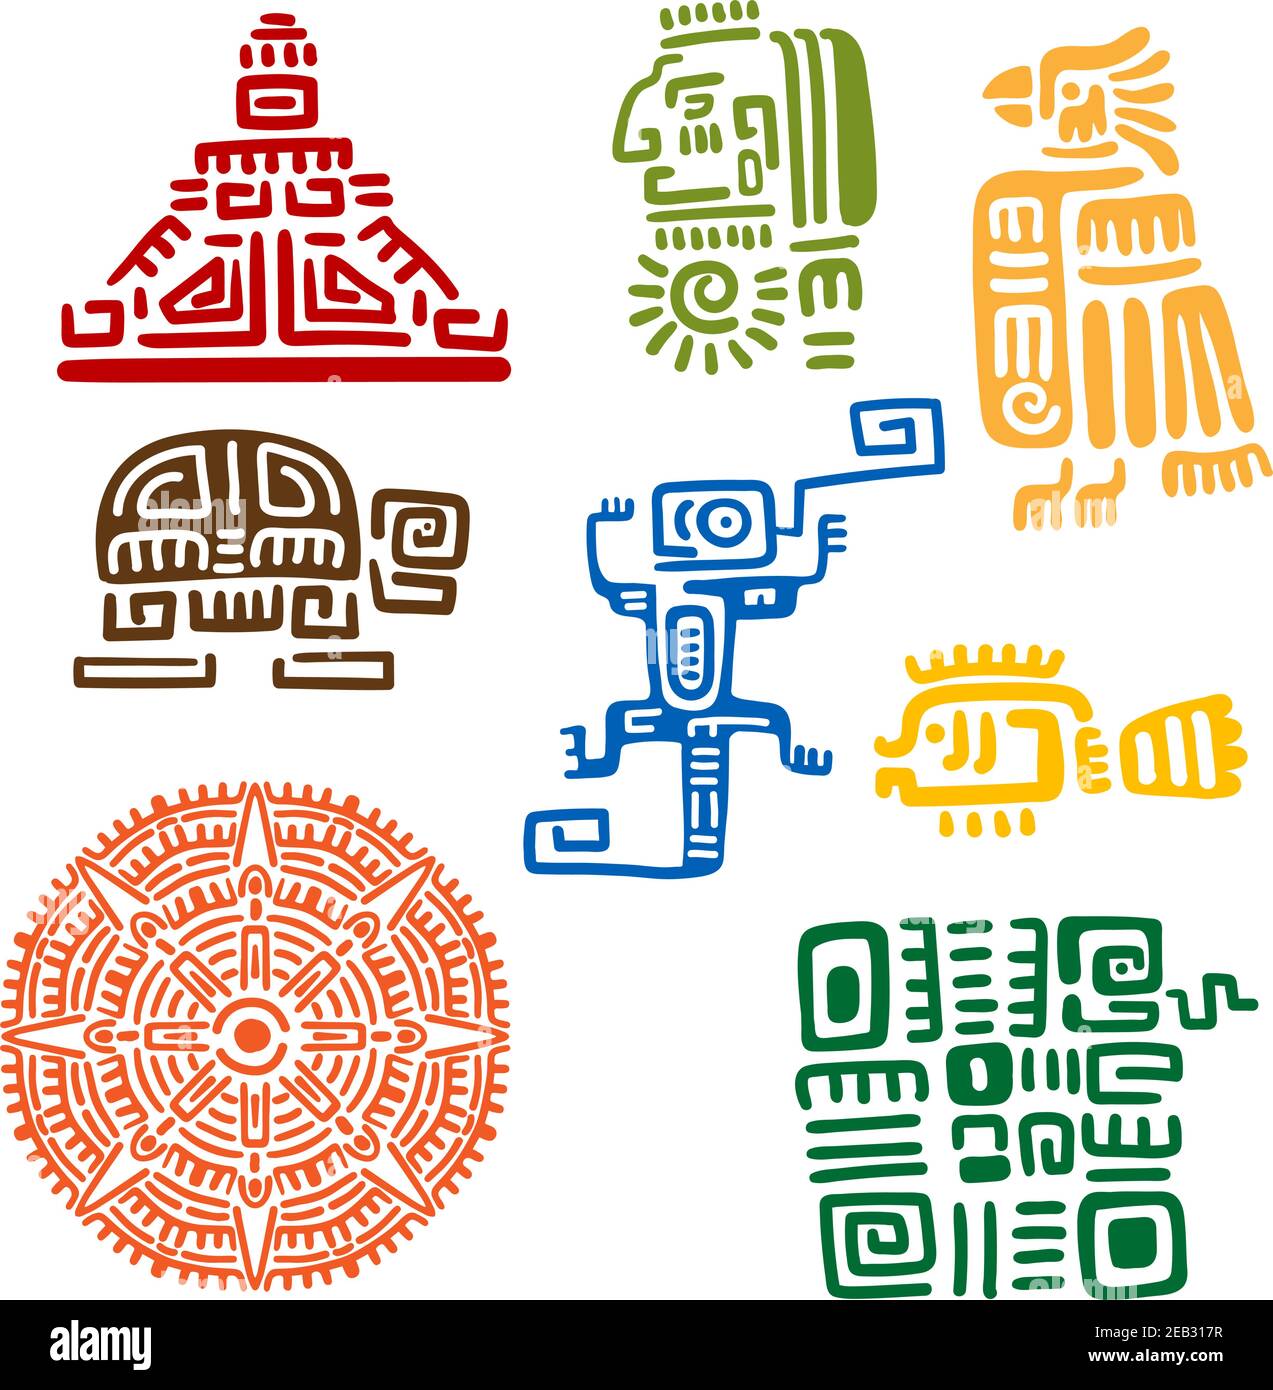 mayan symbols tattoo